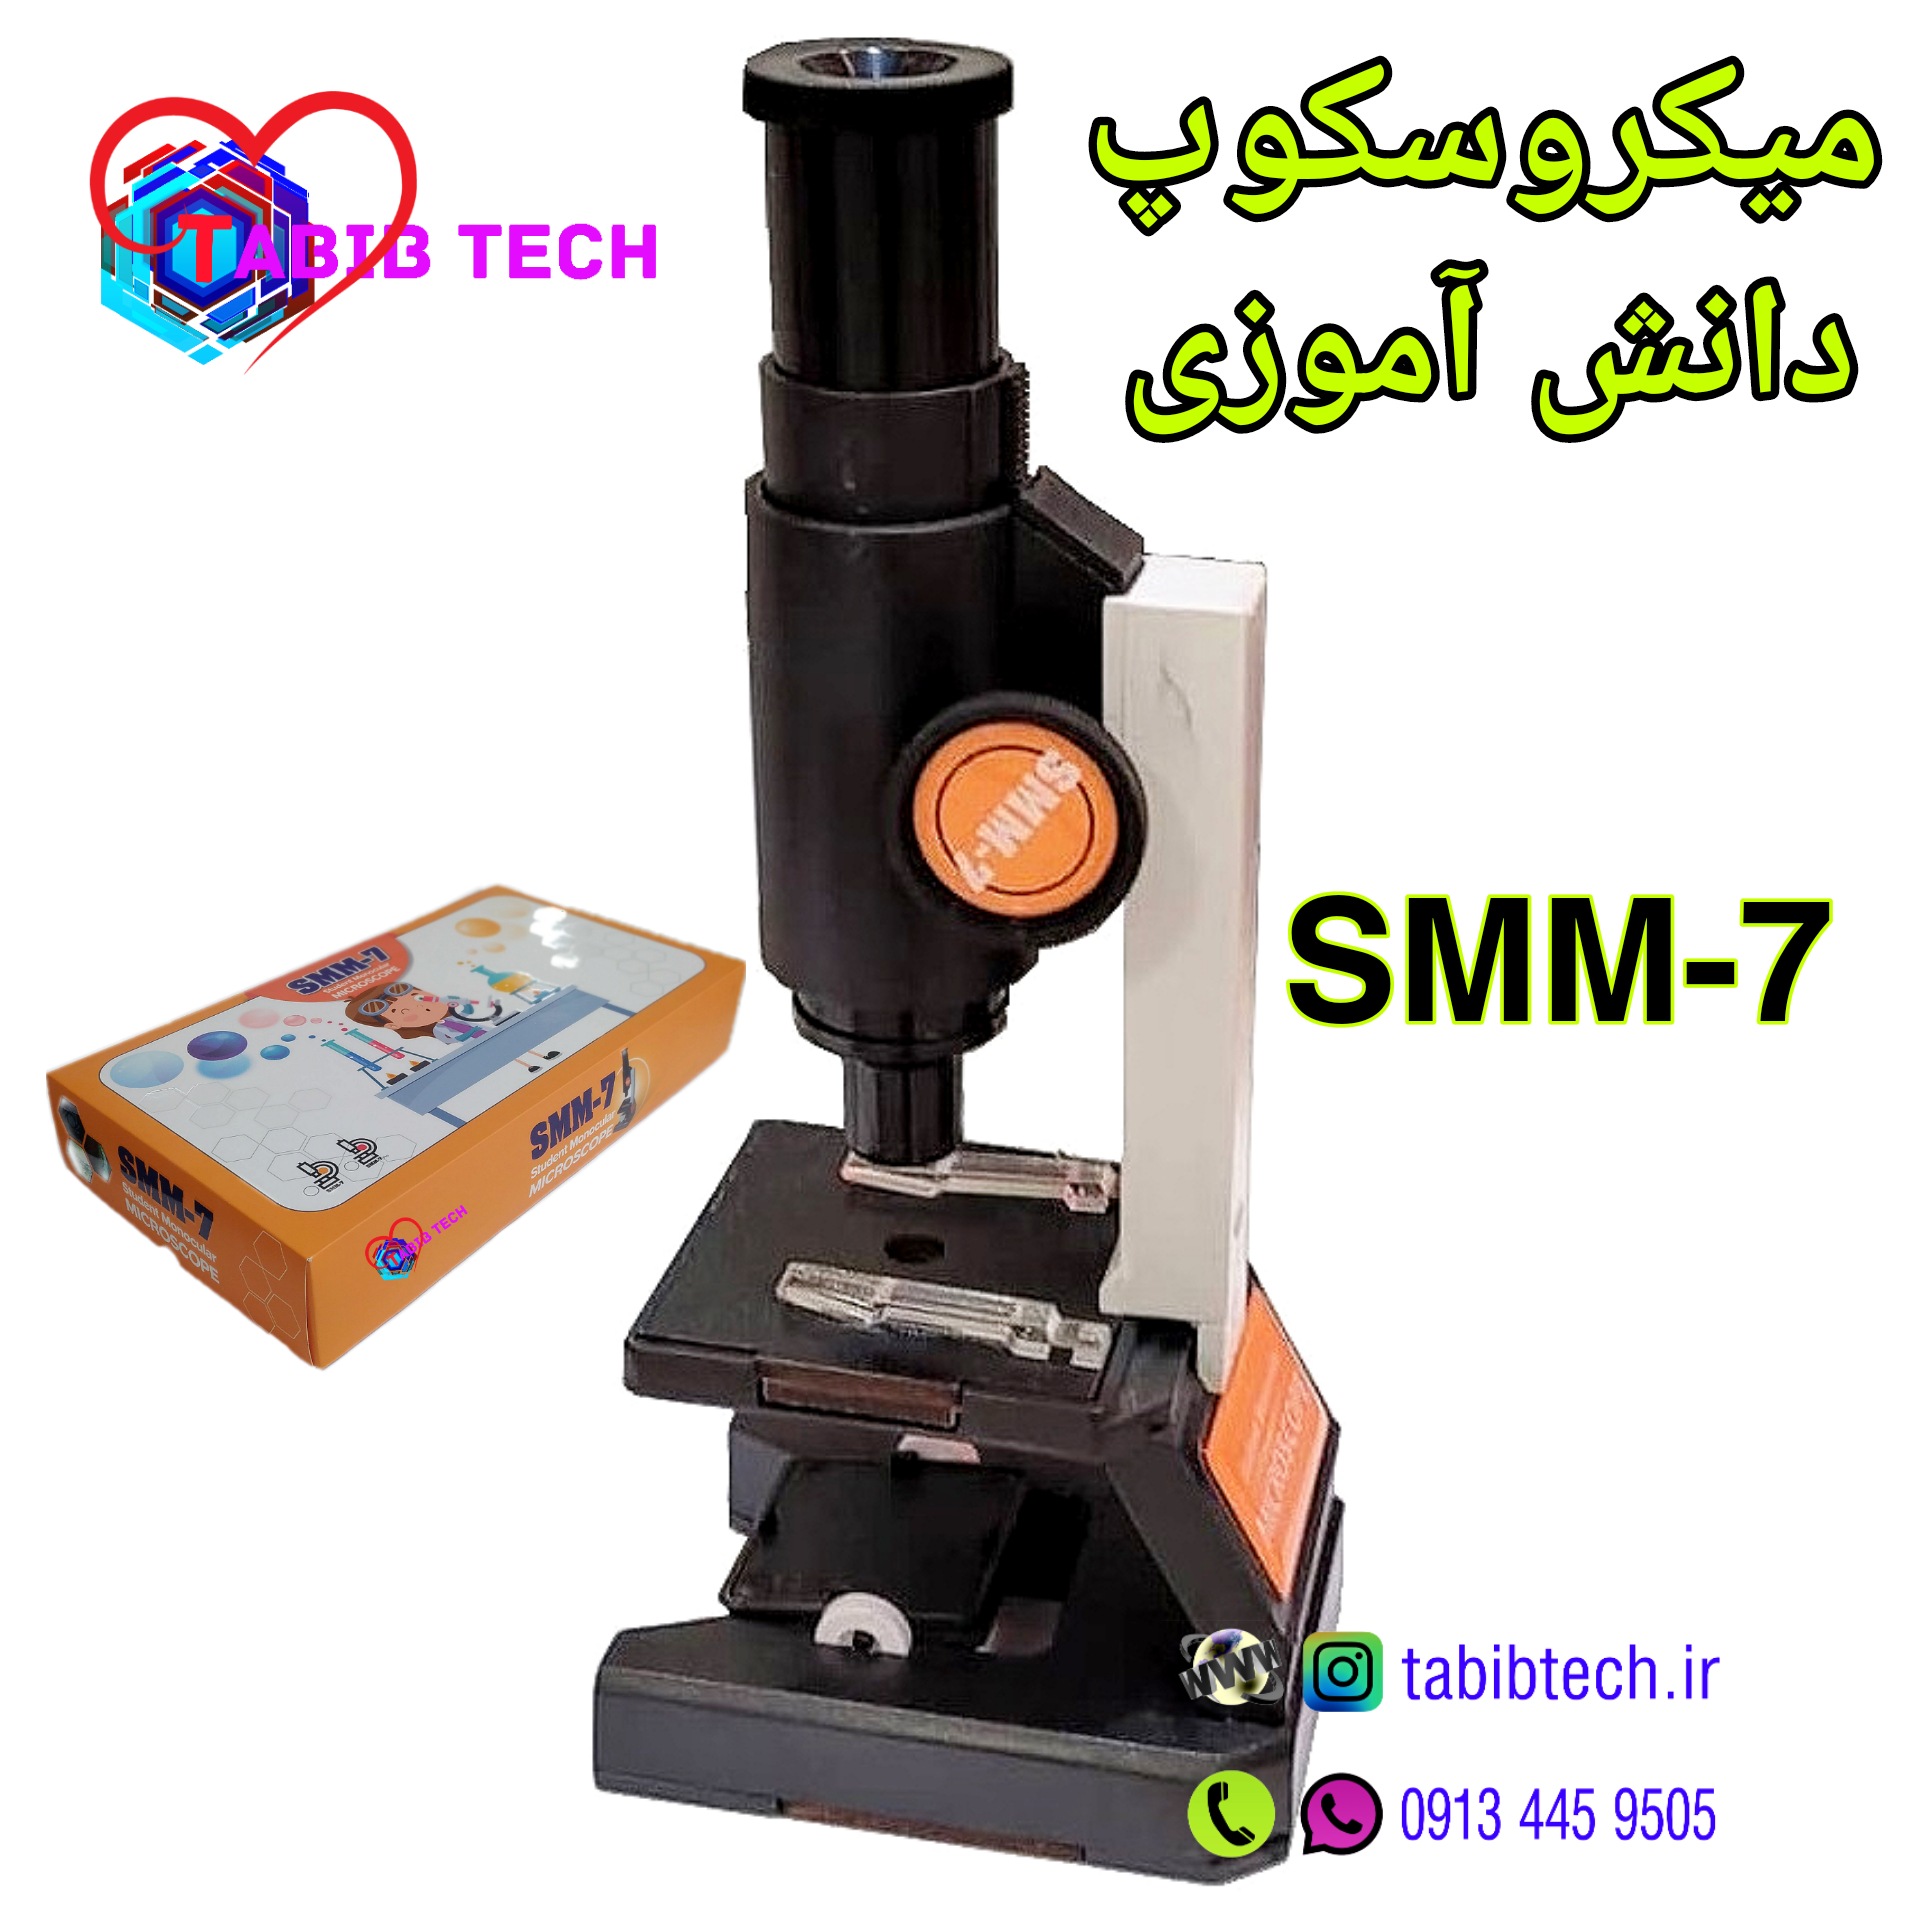 tabibtech.ir میکروسکوپ دانش آموزی SMM-7